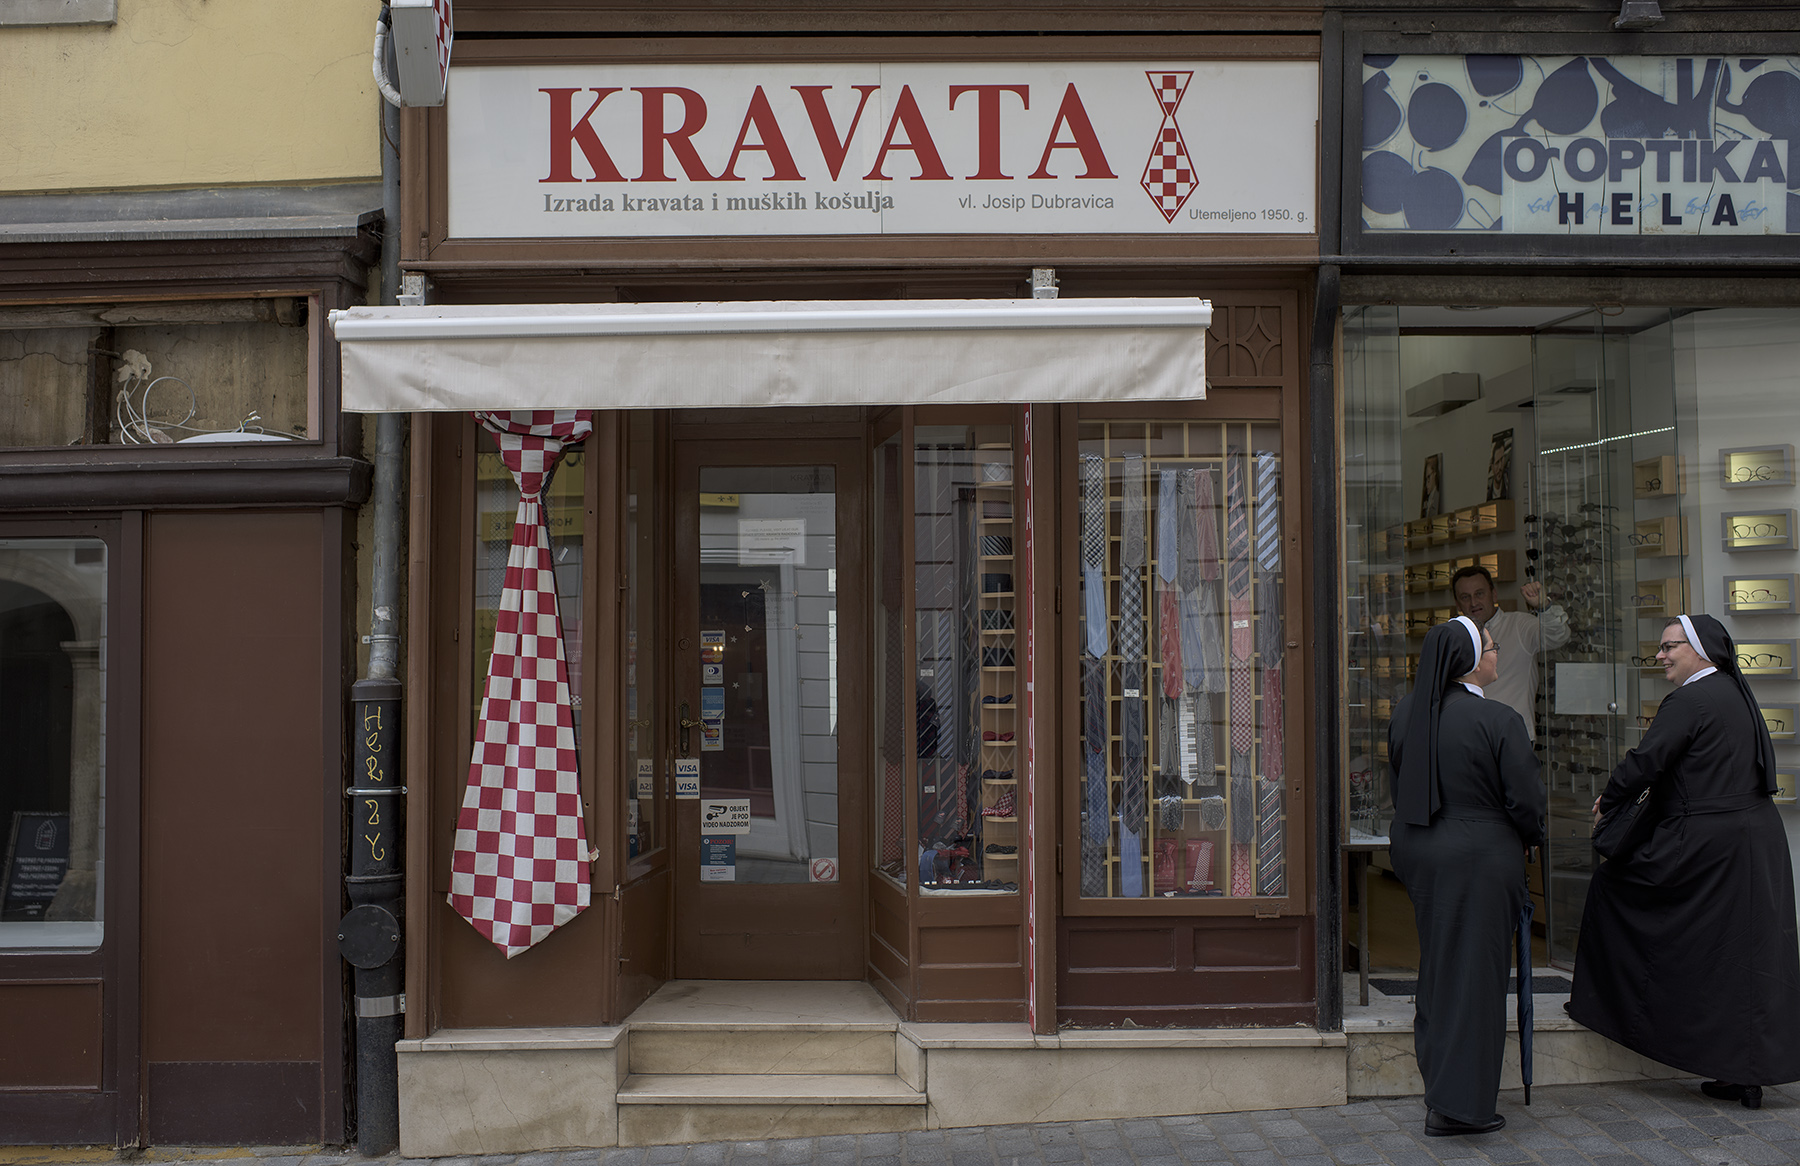 Radićeva 13. Ovdje se nalazila trgovina Kravata. Zatvorena je nakon početka epidemije u Hrvatskoj i potresa.